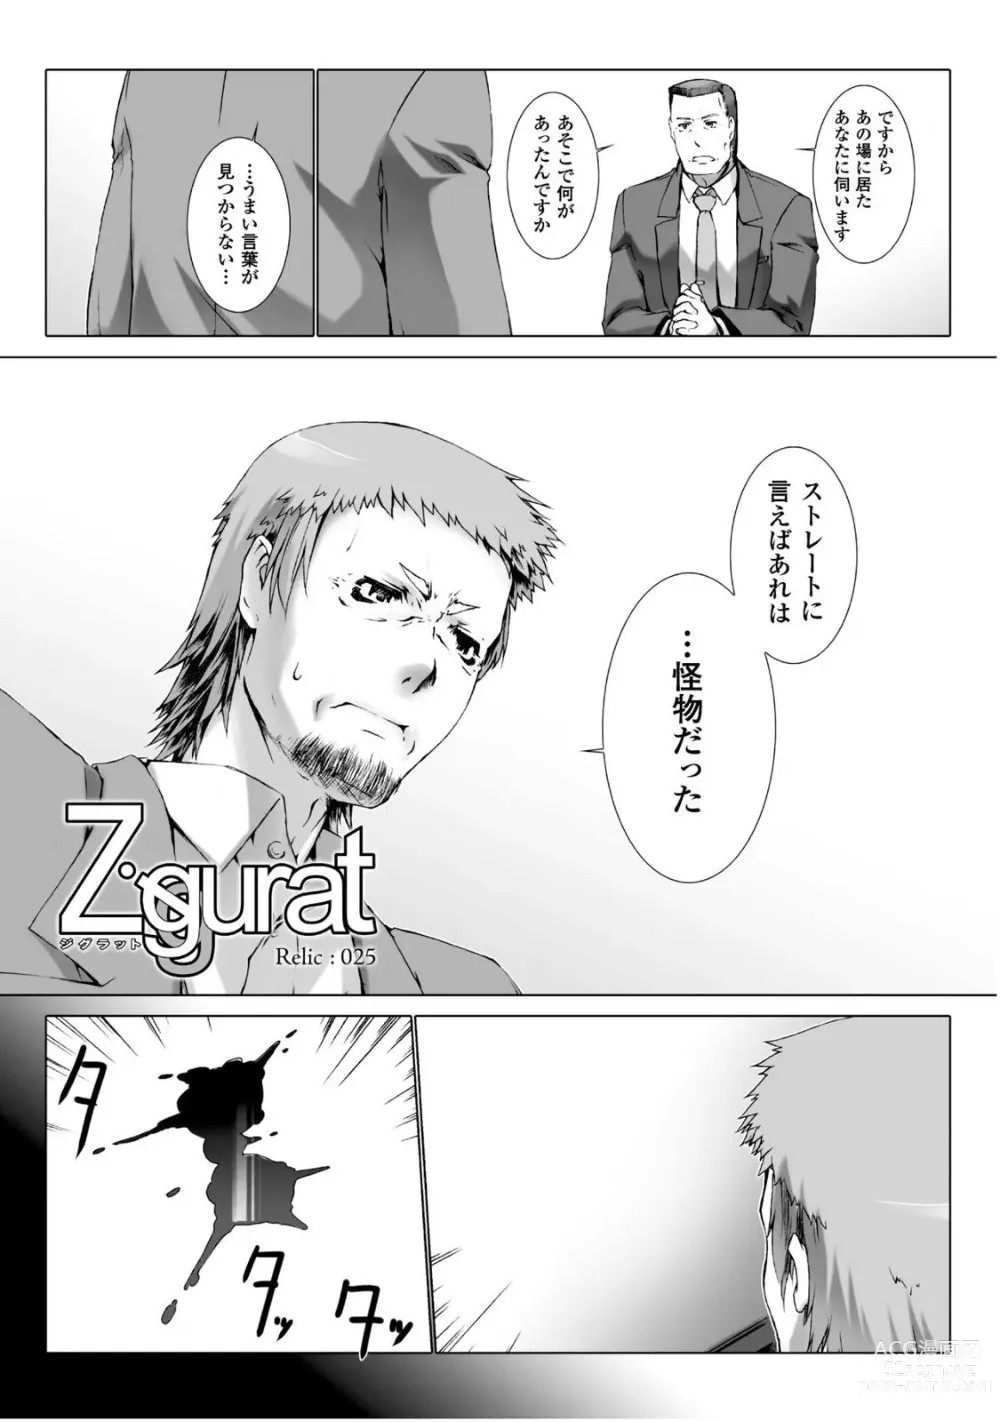 Page 11 of manga Ziggurat 5